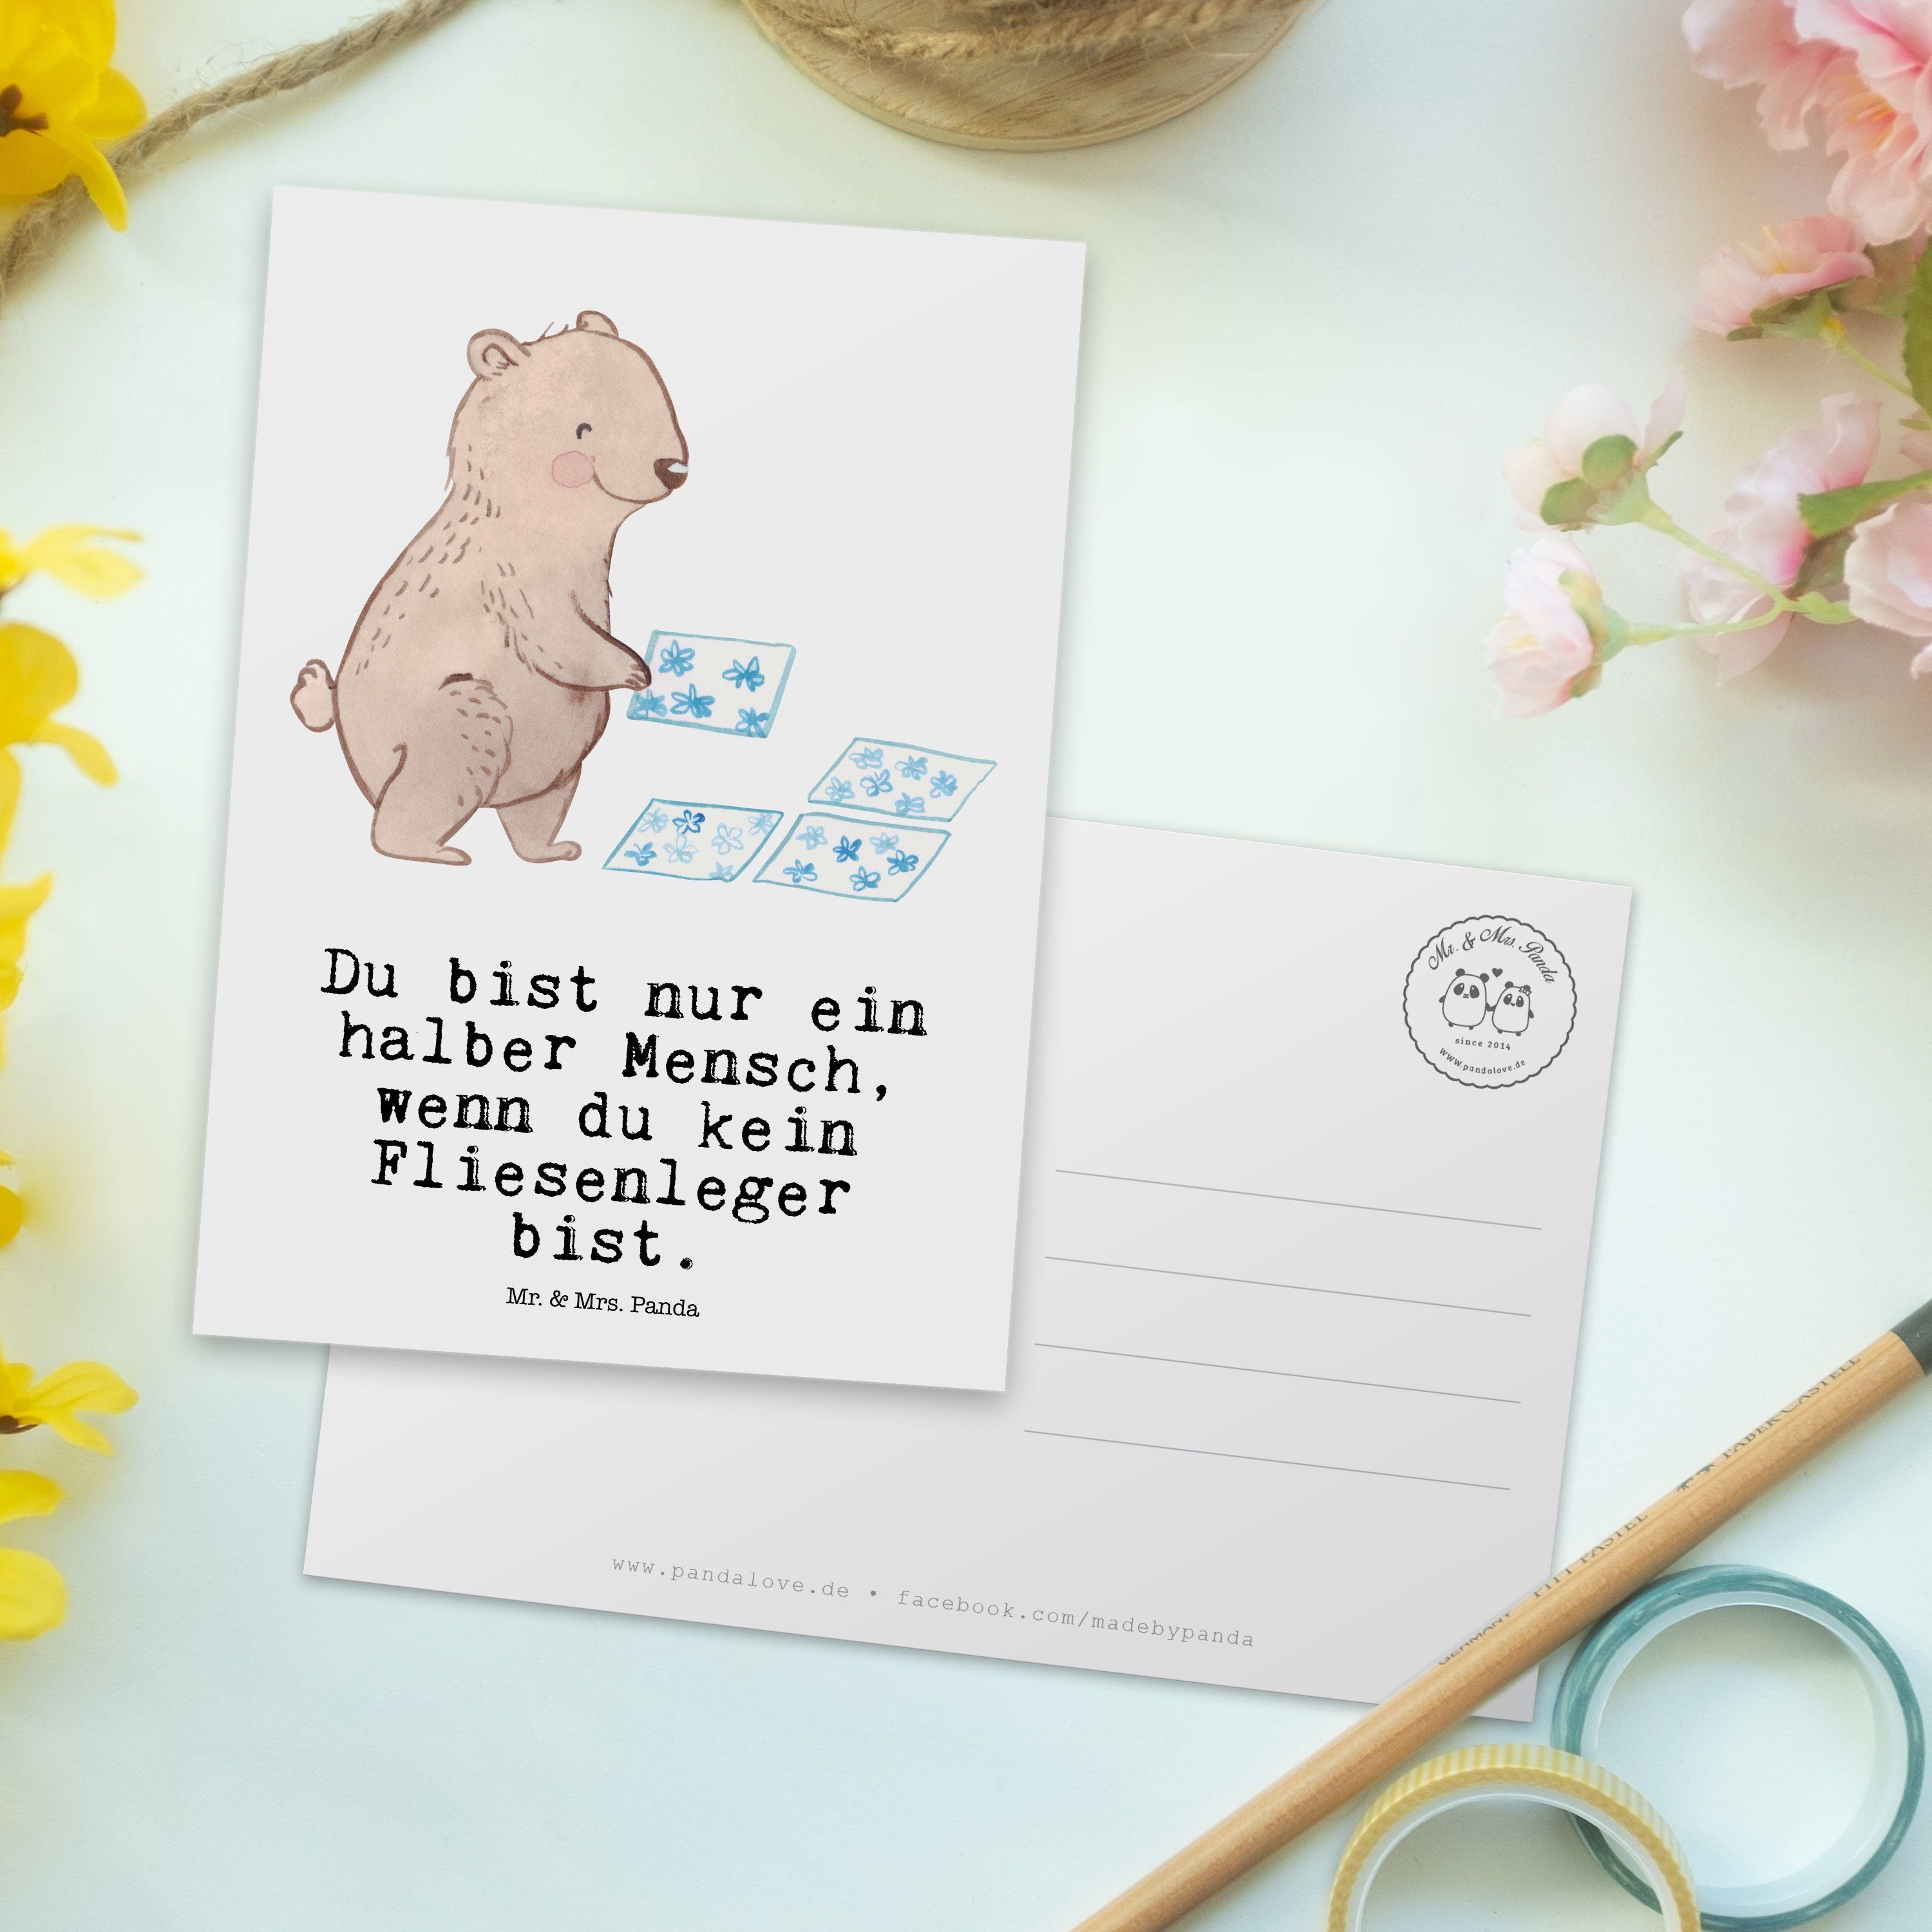 Mr. & Fliesenlege Panda Postkarte - Gesellenprüfung, Geschenk, - Mrs. Herz mit Fliesenleger Weiß